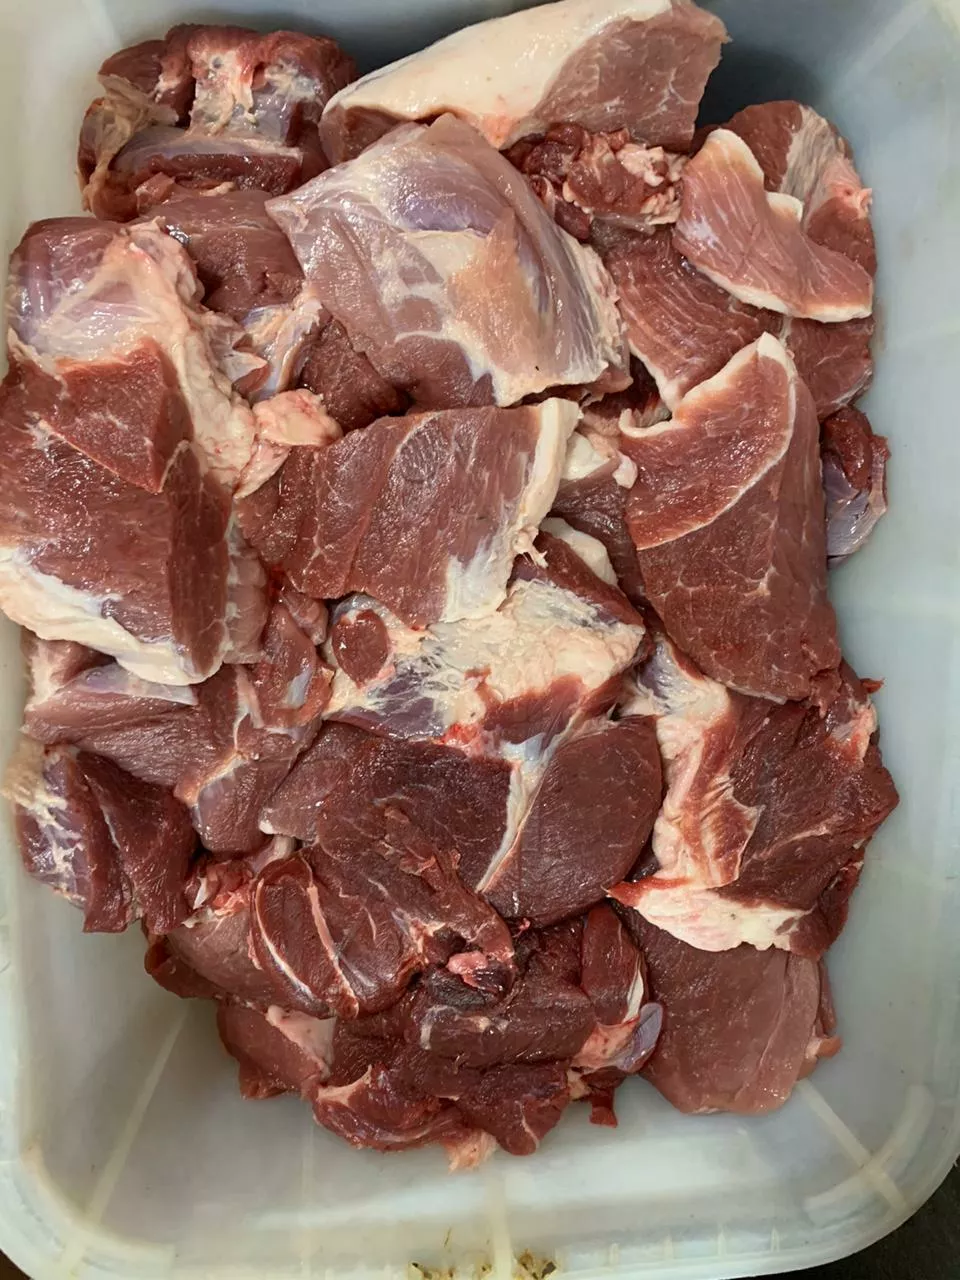 тримминг свиной 80/20 ( котлетное мясо ) в Курске и Курской области